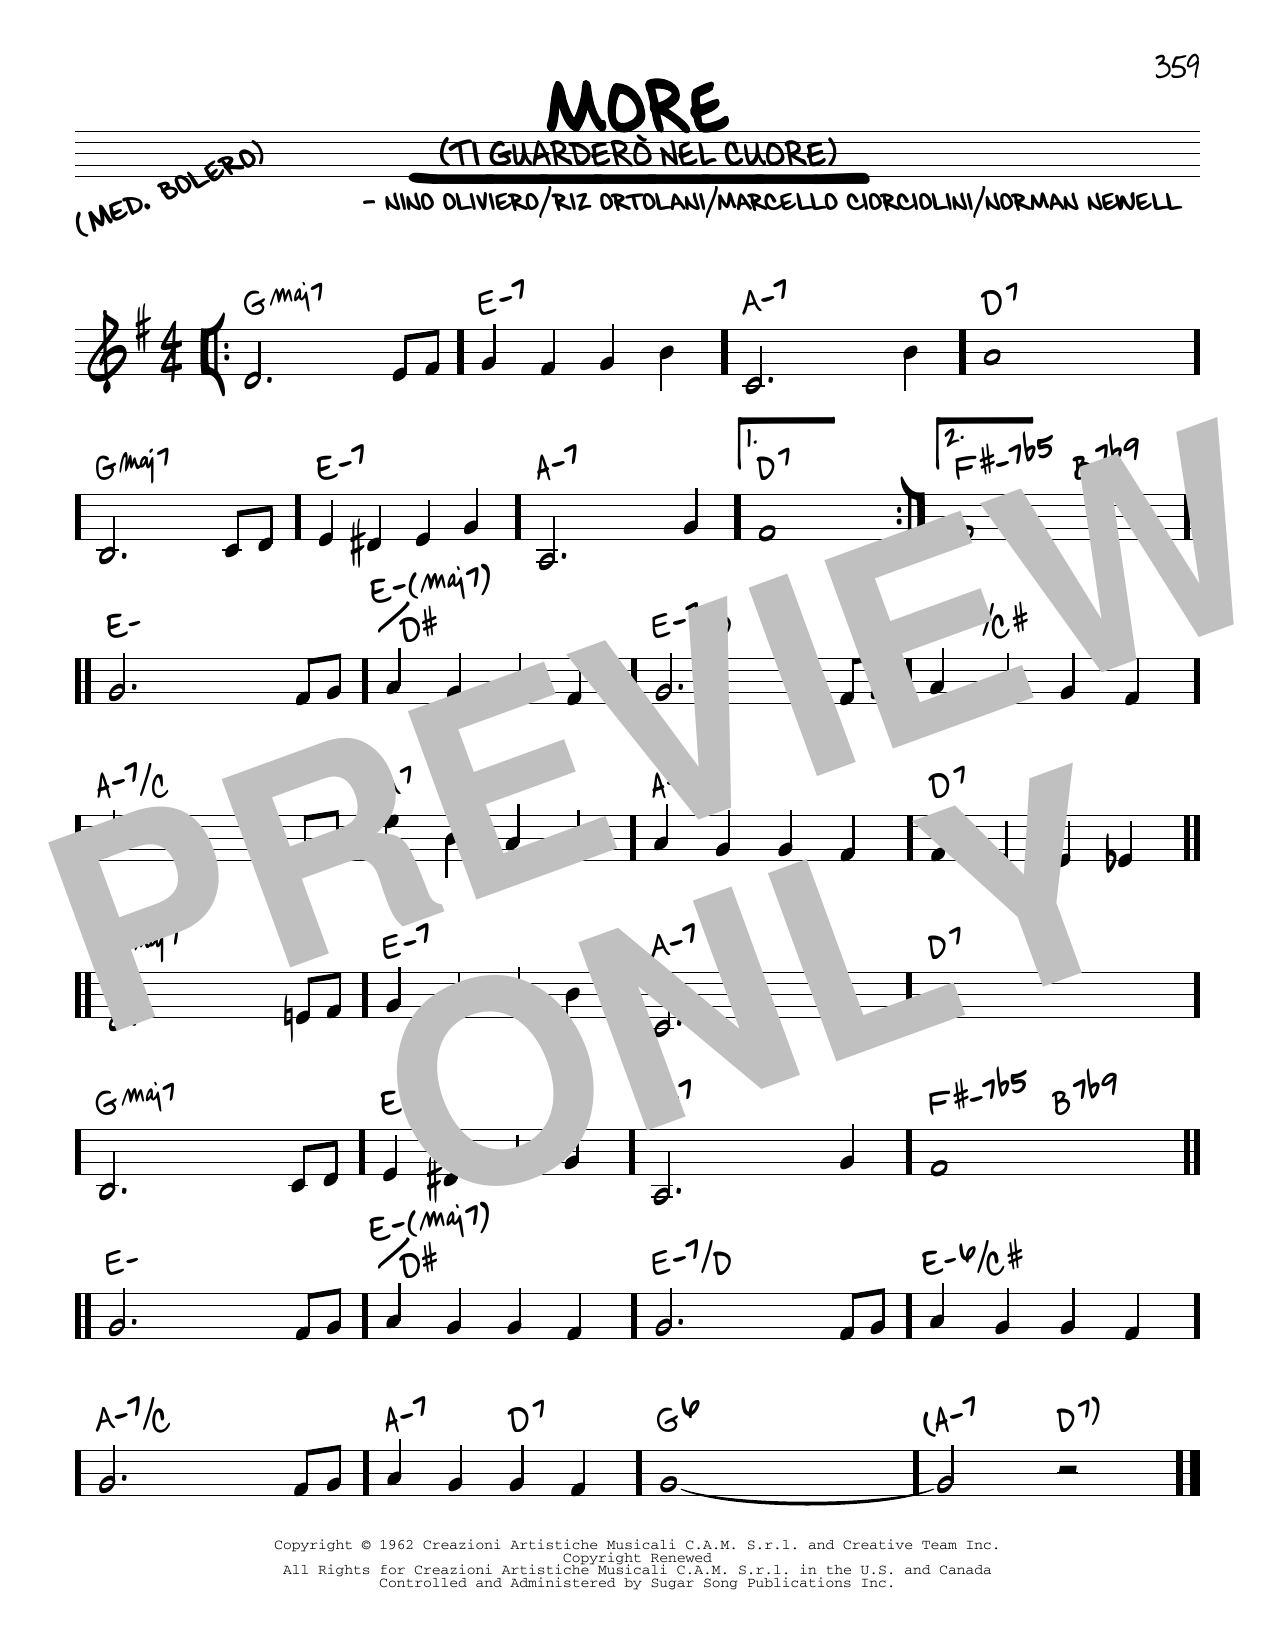 Marcello Ciorciolini More (Ti Guardero Nel Cuore) Sheet Music Notes & Chords for Piano - Download or Print PDF